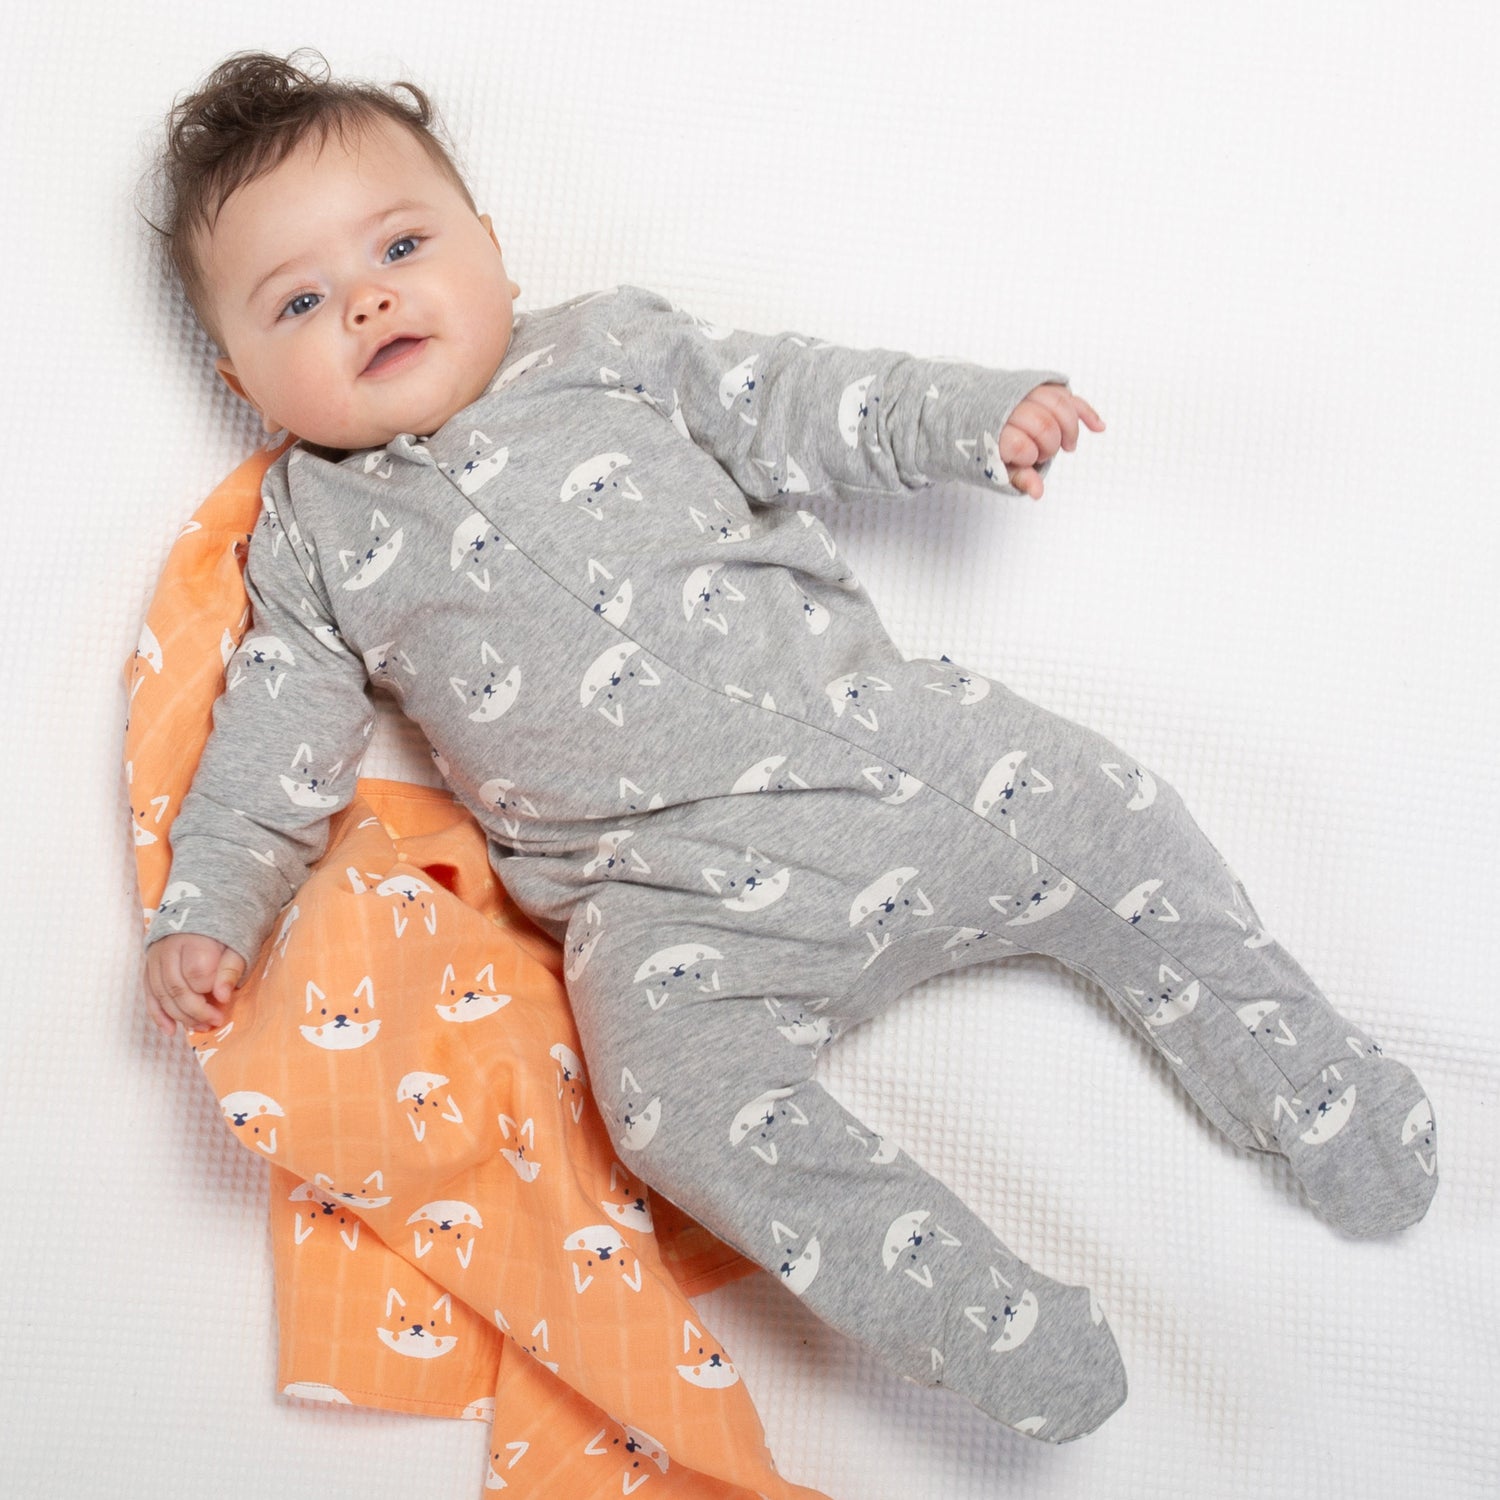 Baby wearing grey foxy sleepsuit